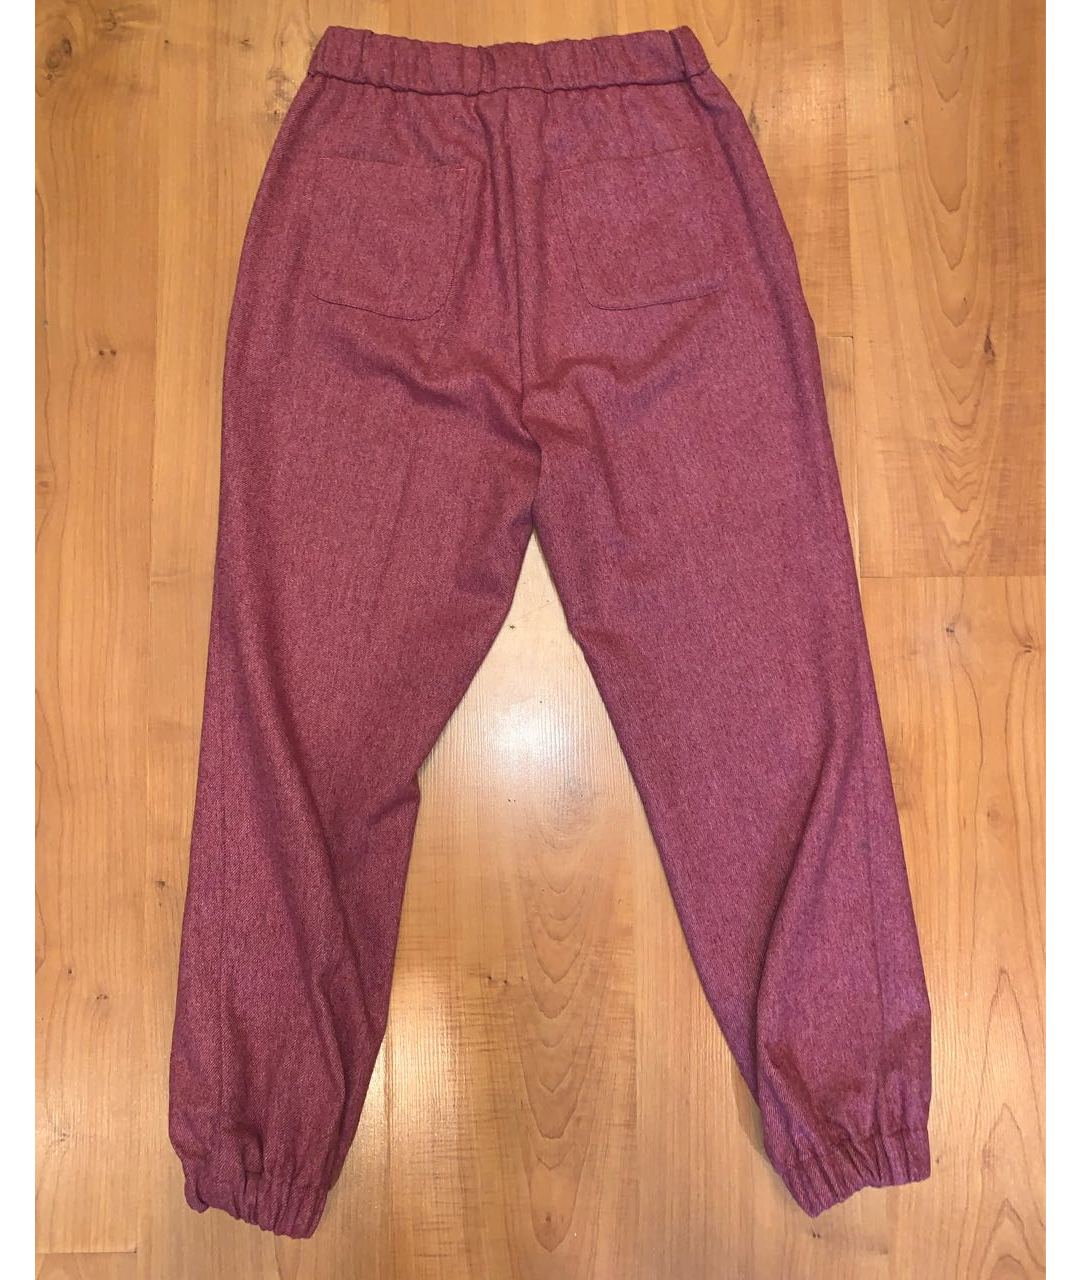 TWIN-SET Красные шерстяные брюки узкие, фото 2